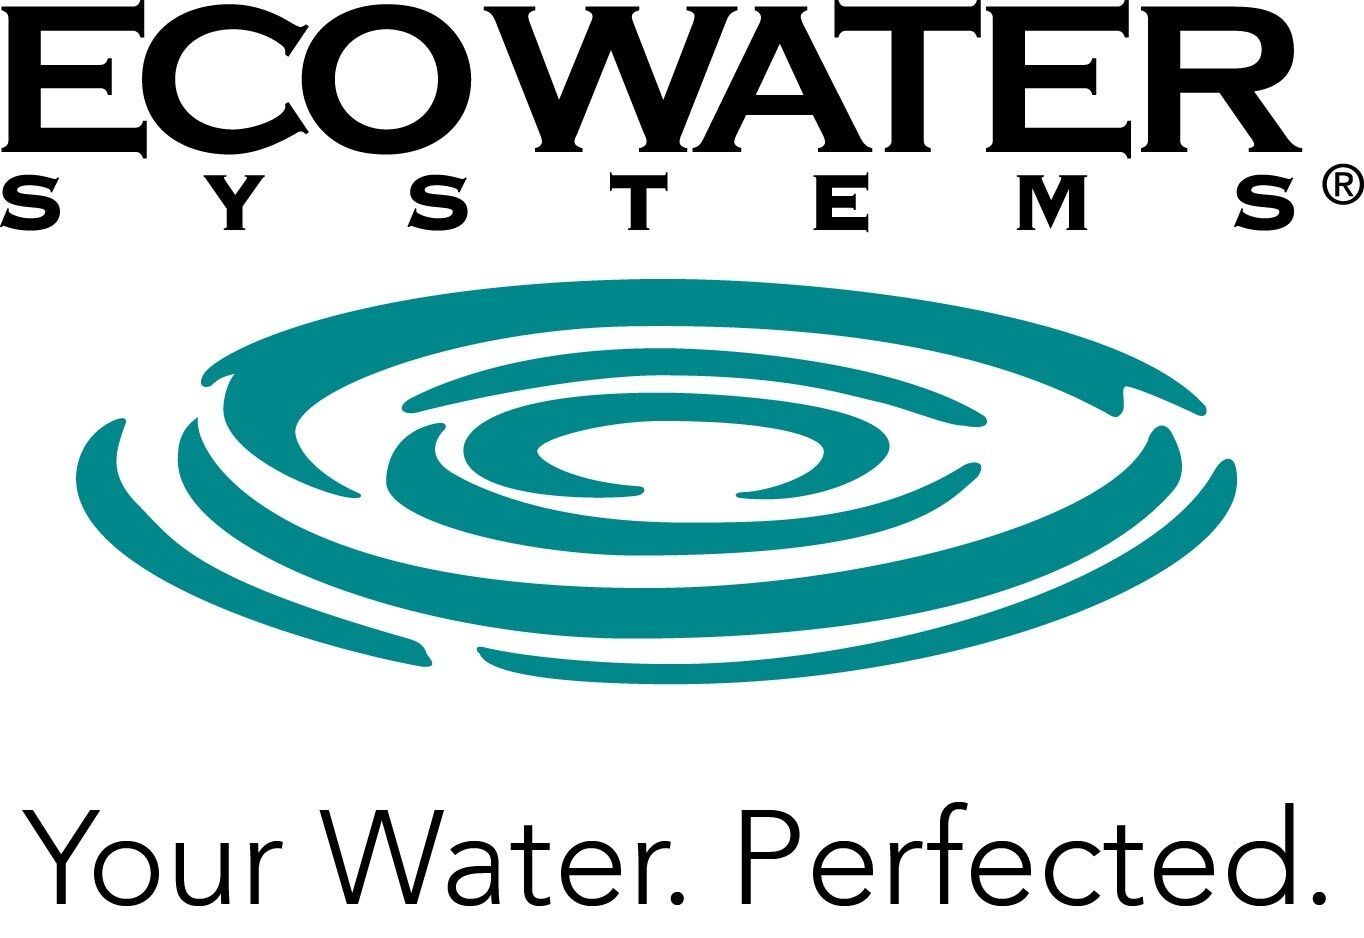 Ecowater Logo